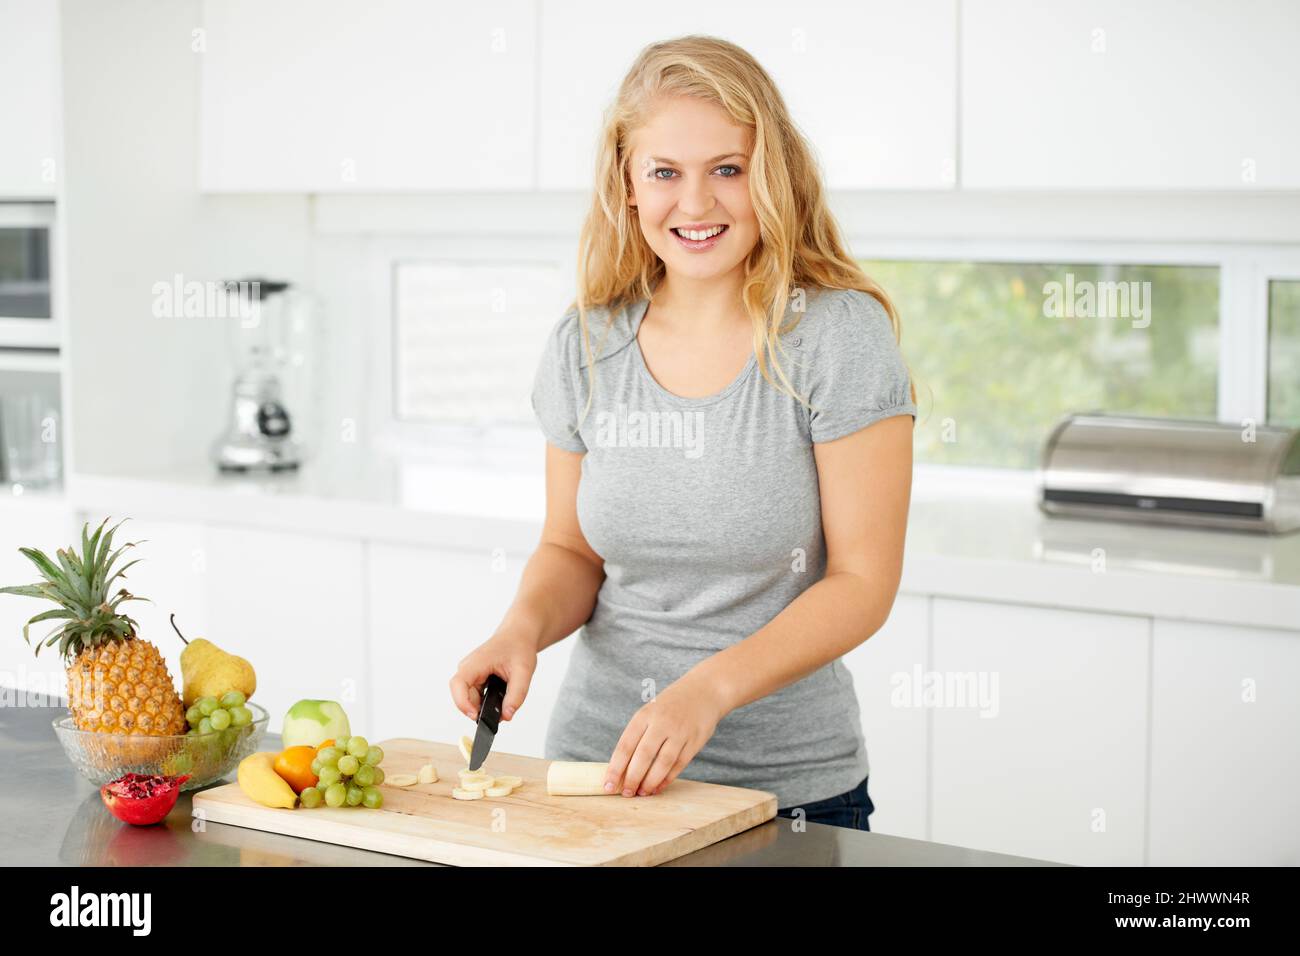 Nichts ist besser als frisches Obst. Attraktive kurvenreiche junge Frau, die in ihrer Küche Obst hackt. Stockfoto